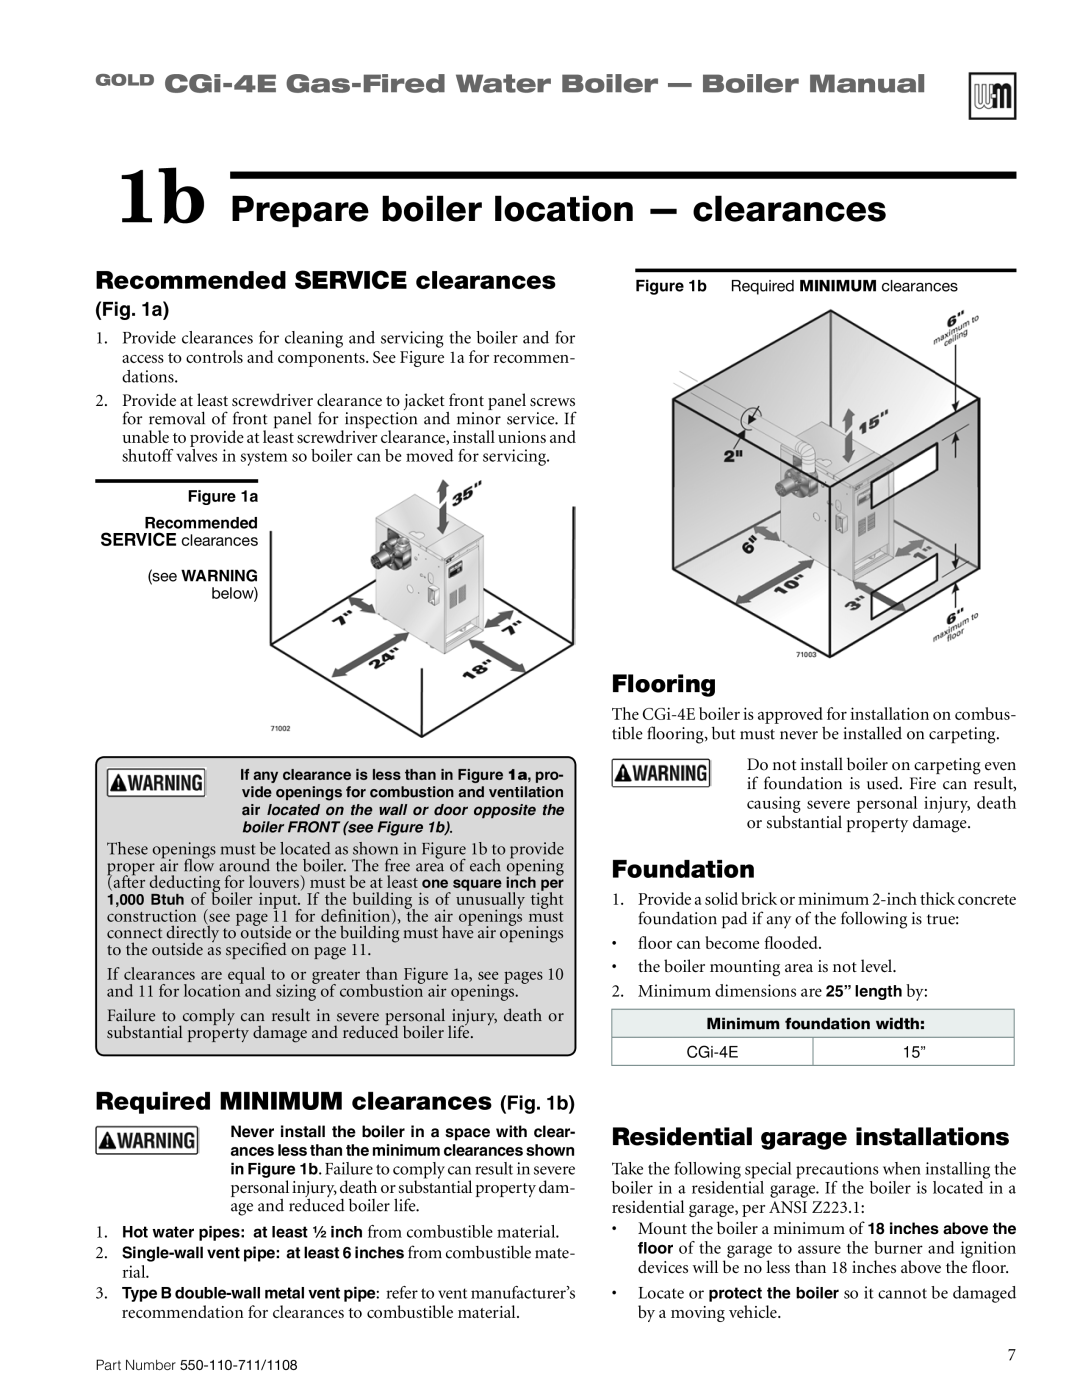 Weil-McLain CGI-4E 1b Prepare boiler location - clearances, GOLD CGi-4E Gas-FiredWater Boiler - Boiler Manual, Flooring 